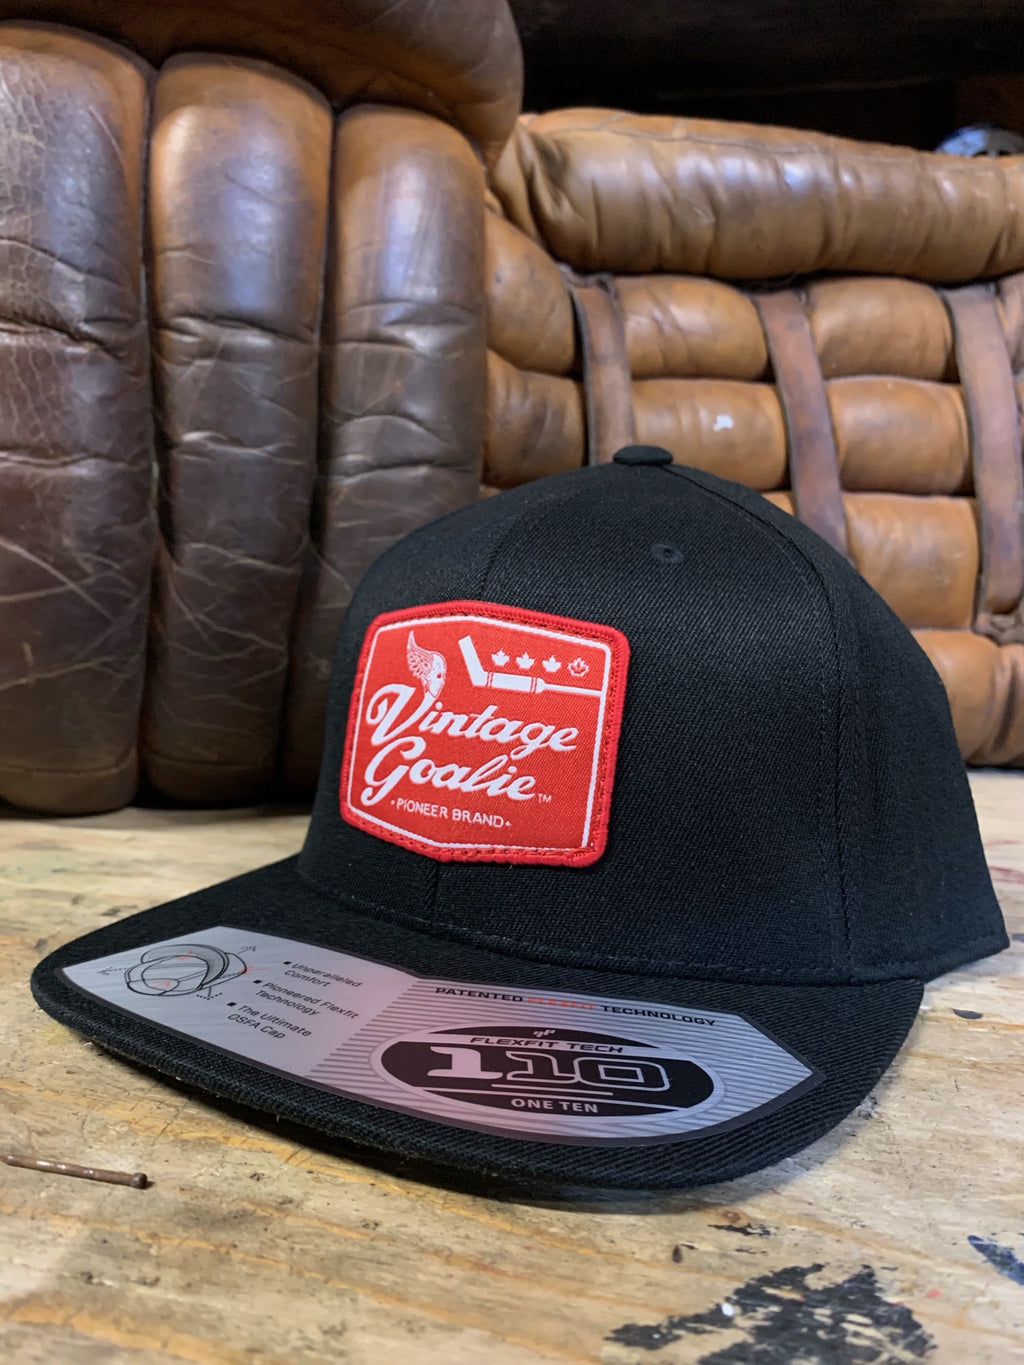 Hats – Vintage Goalie Brand